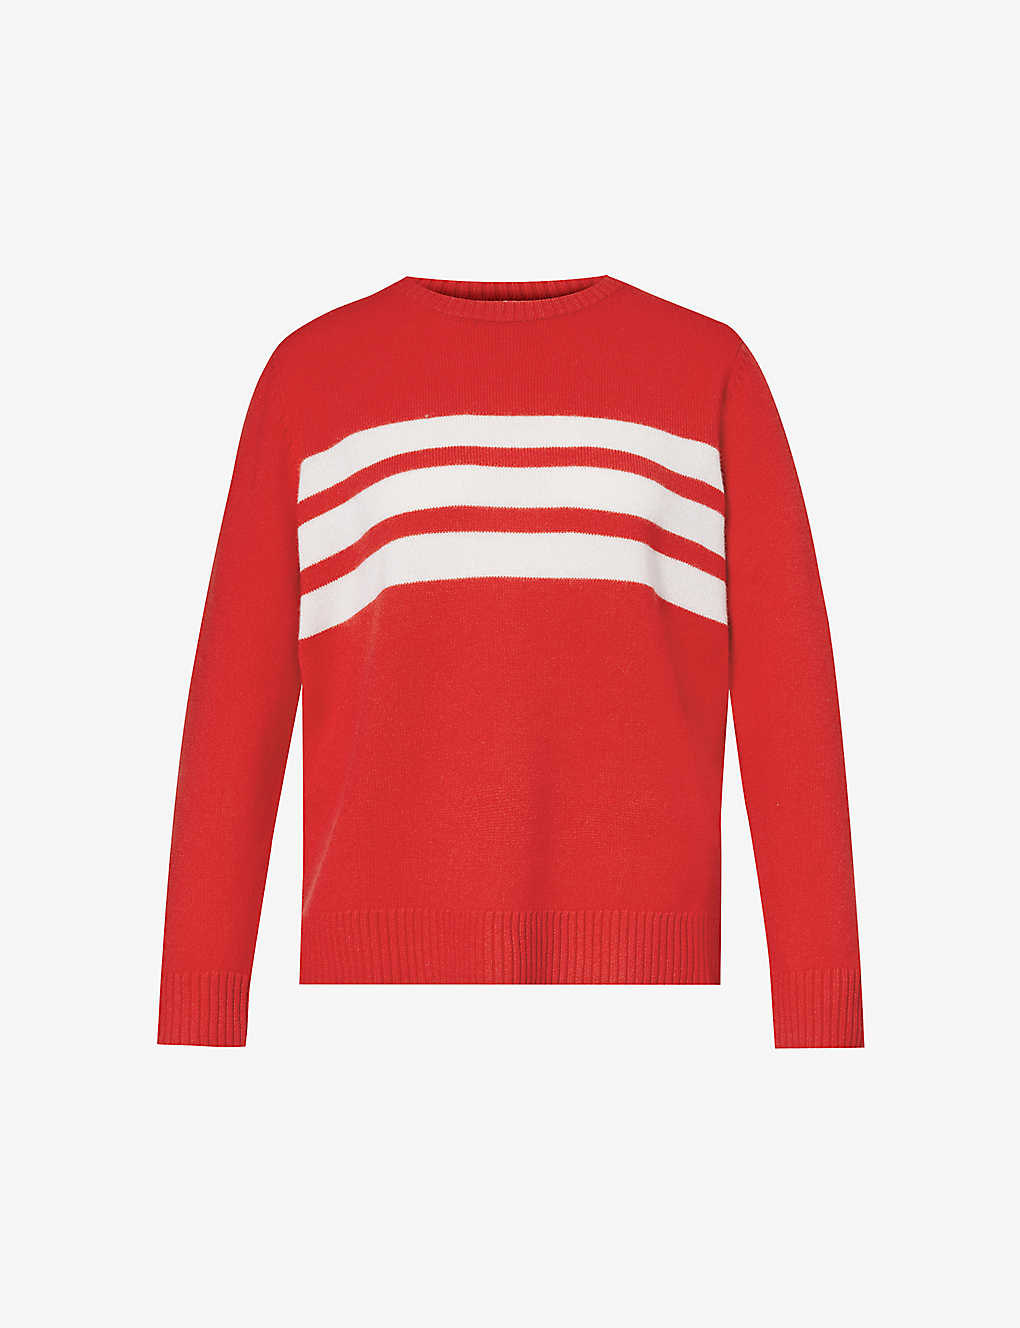 Aspiga Cali Striped Wool Jumper In Red/cream